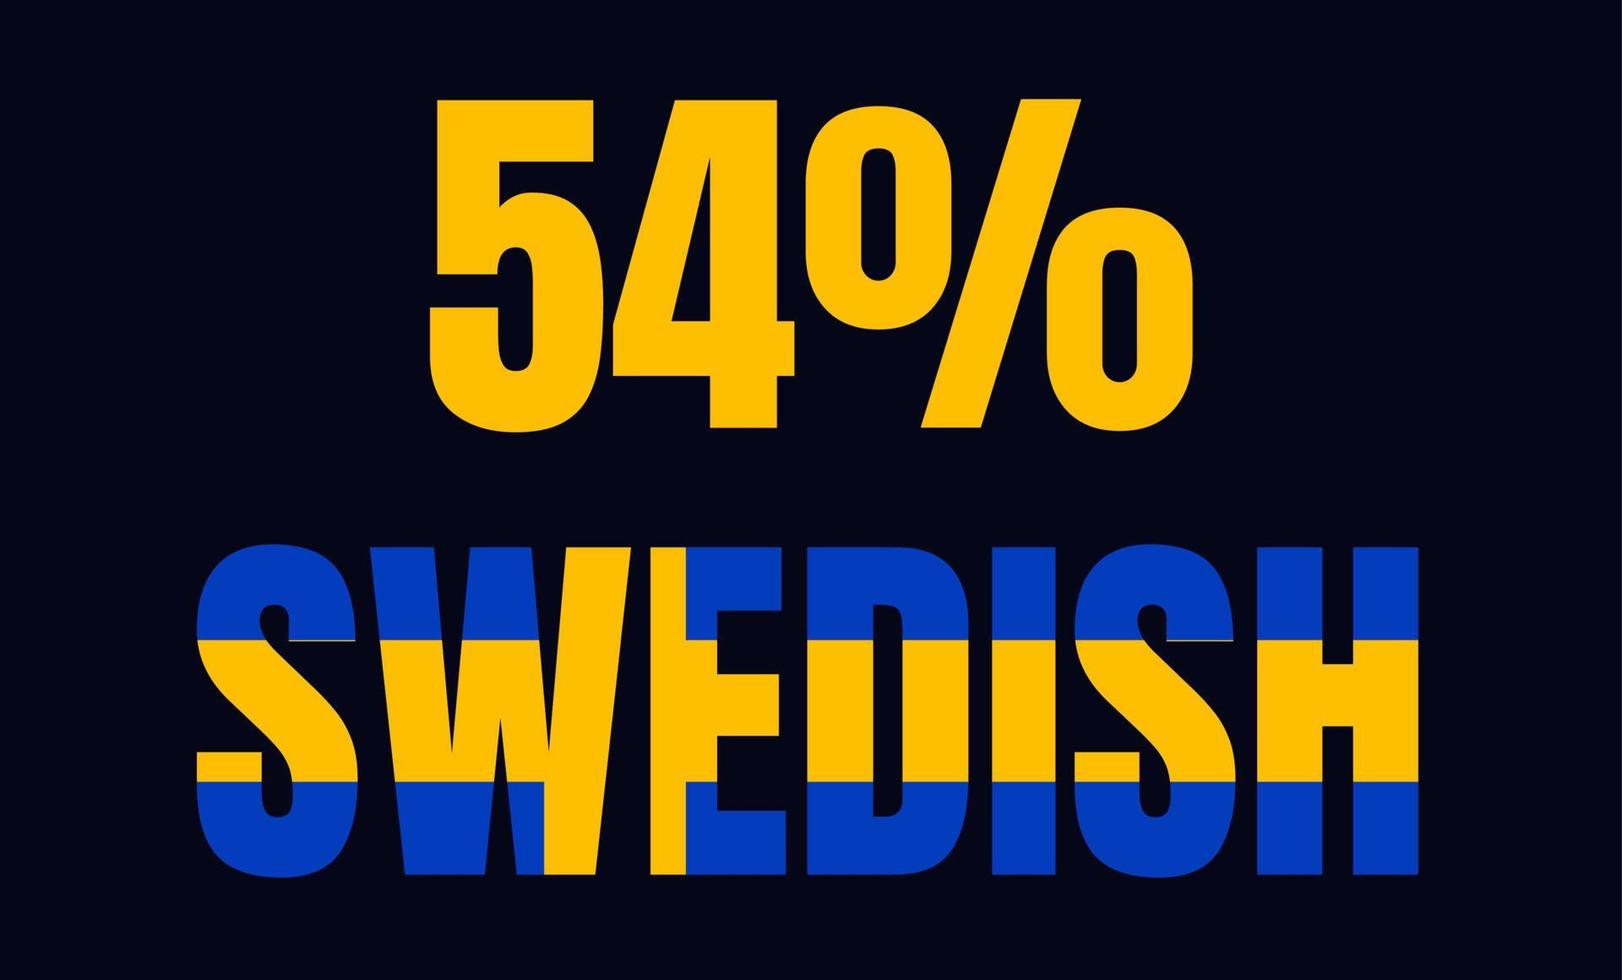 54 procent svensk skyltetikett vektor konstillustration med fantastiskt typsnitt och blågul färg